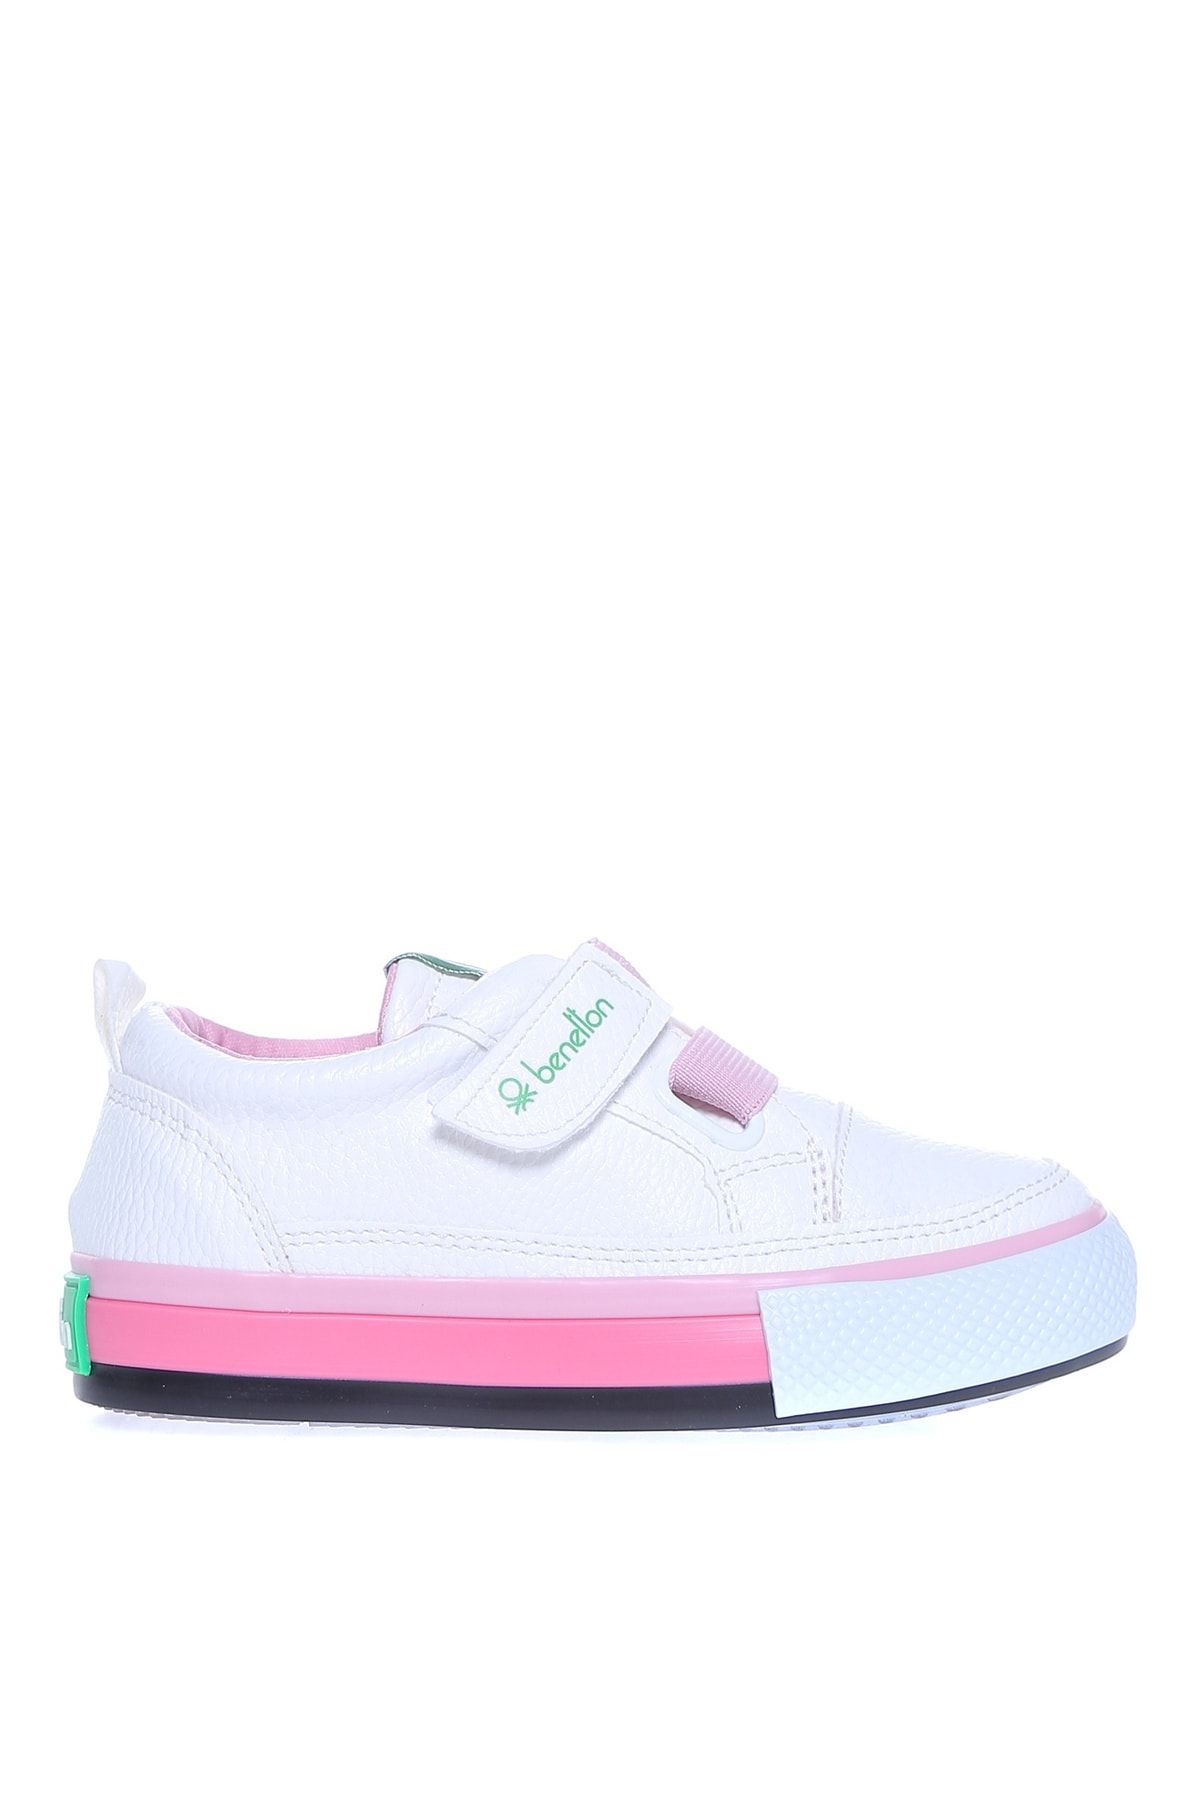 Benetton Beyaz - Pembe Kız Çocuk Yürüyüş Ayakkabısı BN-30441 177-Beyaz-Pembe